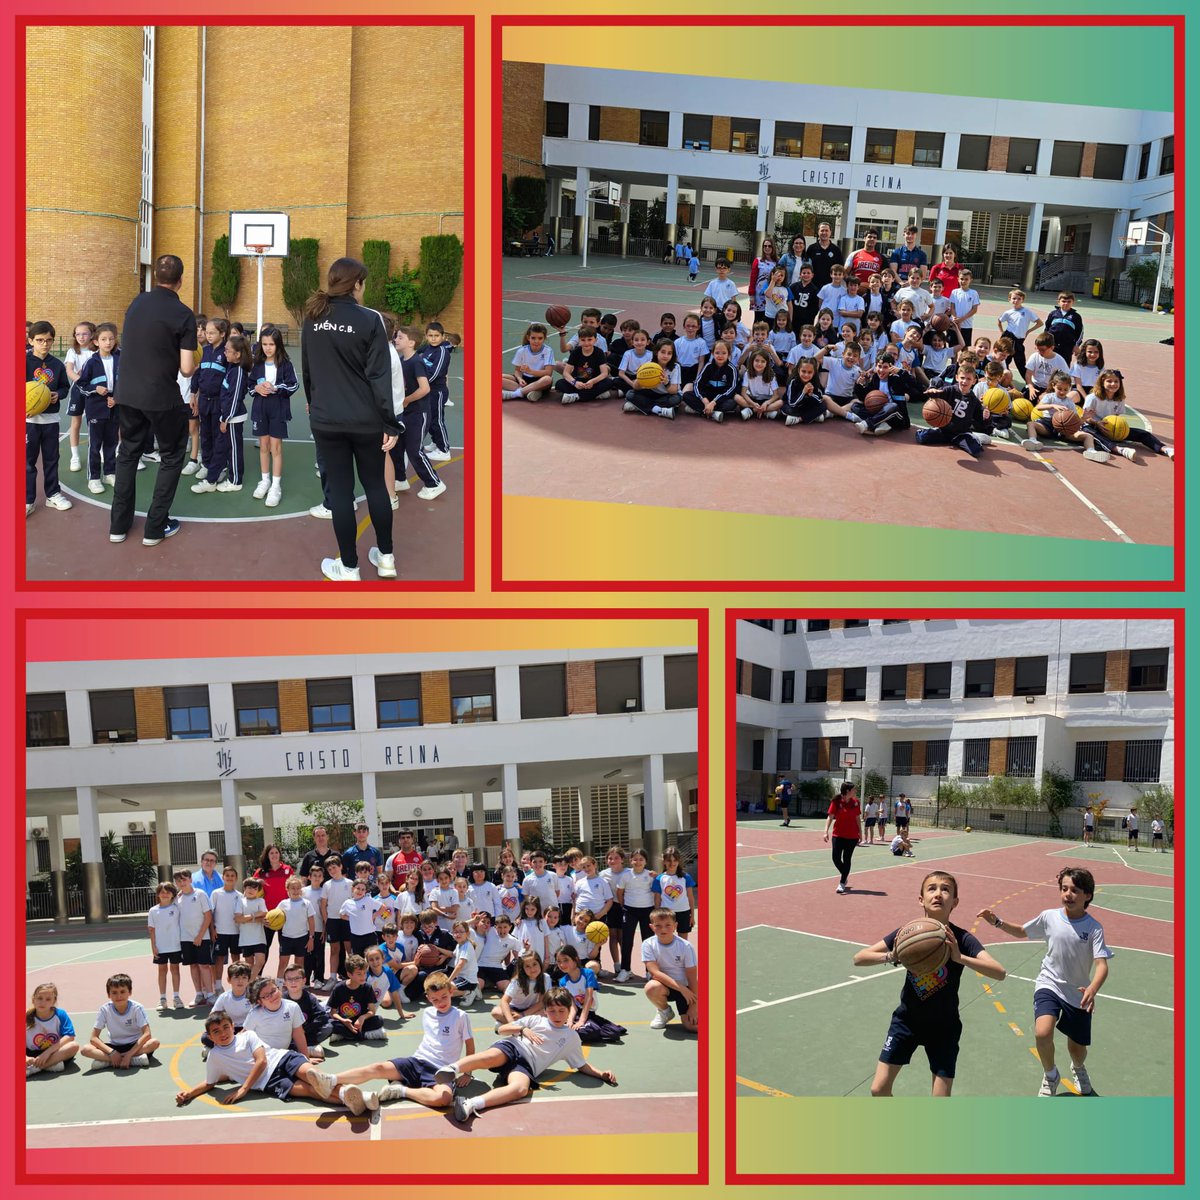 Presentación, para el alumnado de 1º a 4º de Educación Primaria, de la actividad deportiva “#baloncesto”, en colaboración con el Jaén CB, que será ofertada para el curso 24-25. ¡Una mañana muy divertida disfrutando de este maravilloso deporte! @jaen_cb #actividadesextraescolares